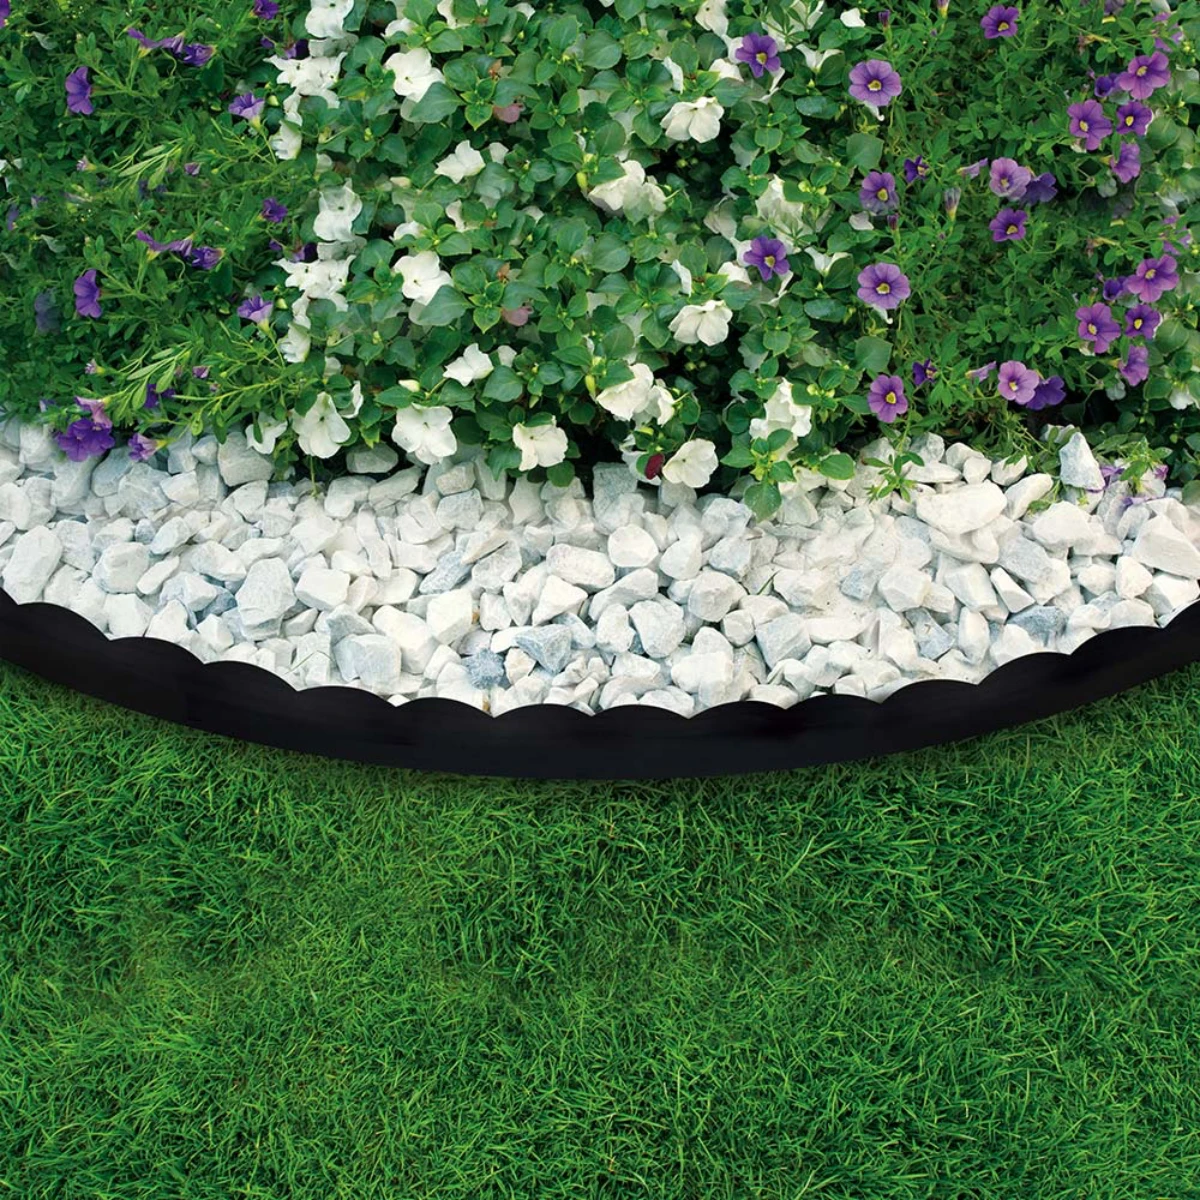 bordure de galets balncs pelouse fleurs blanches et violettes